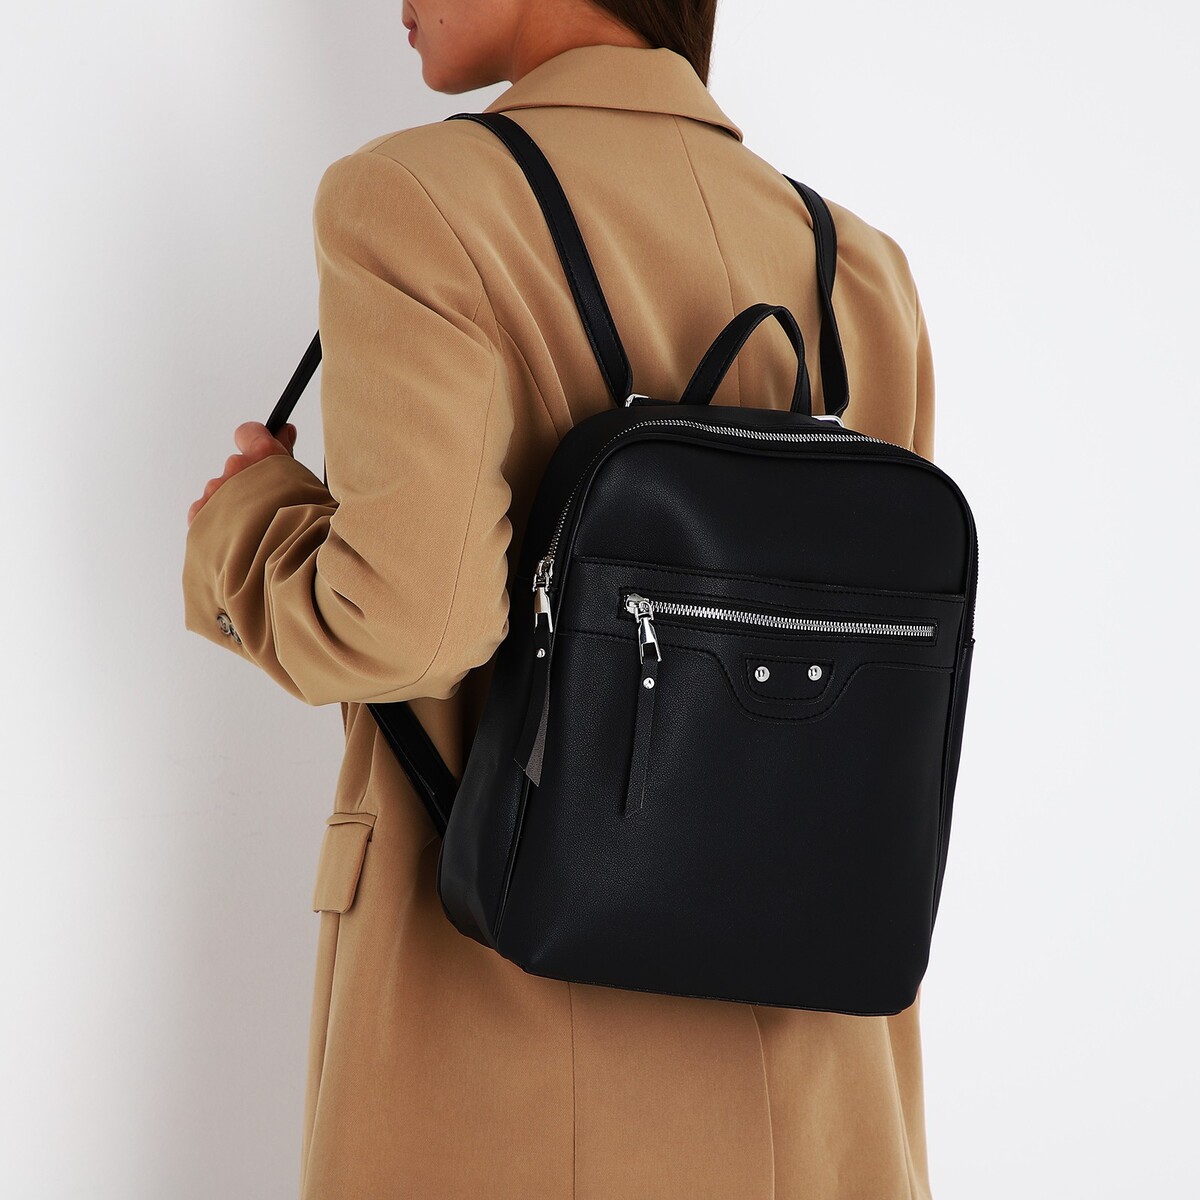 Рюкзак женский из искусственной кожи на молнии, 3 кармана, цвет черный рюкзак городской из искусственной кожи на молнии 3 кармана